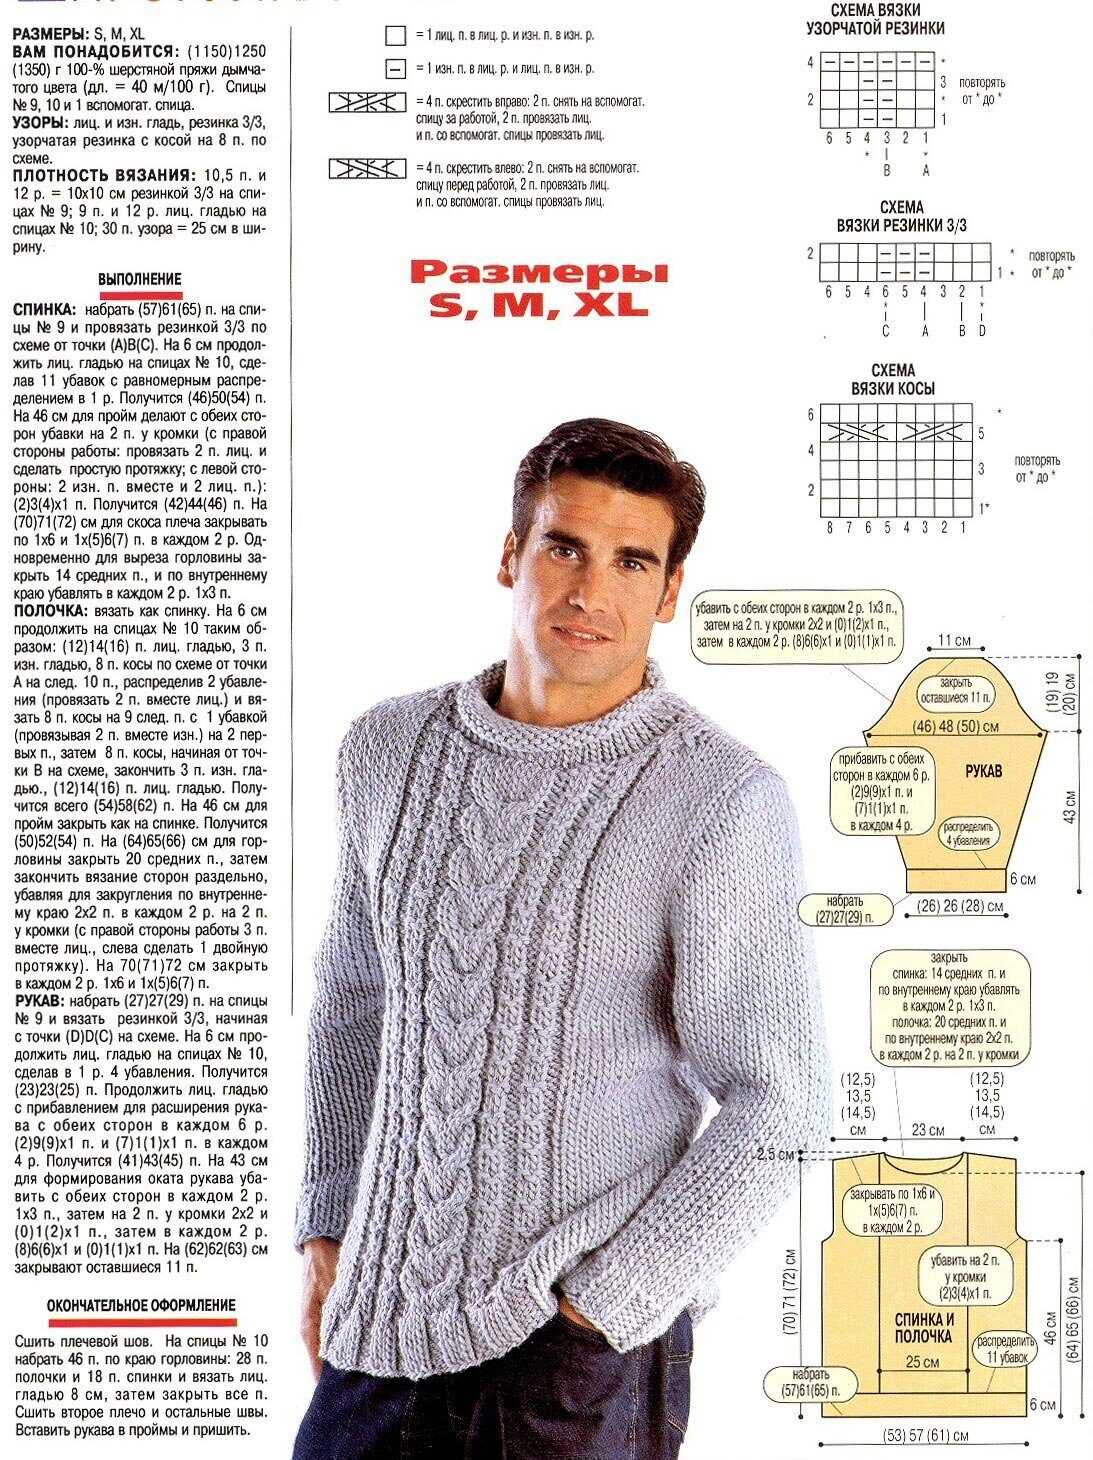 Мужской свитер спицами, подробное описание процесса